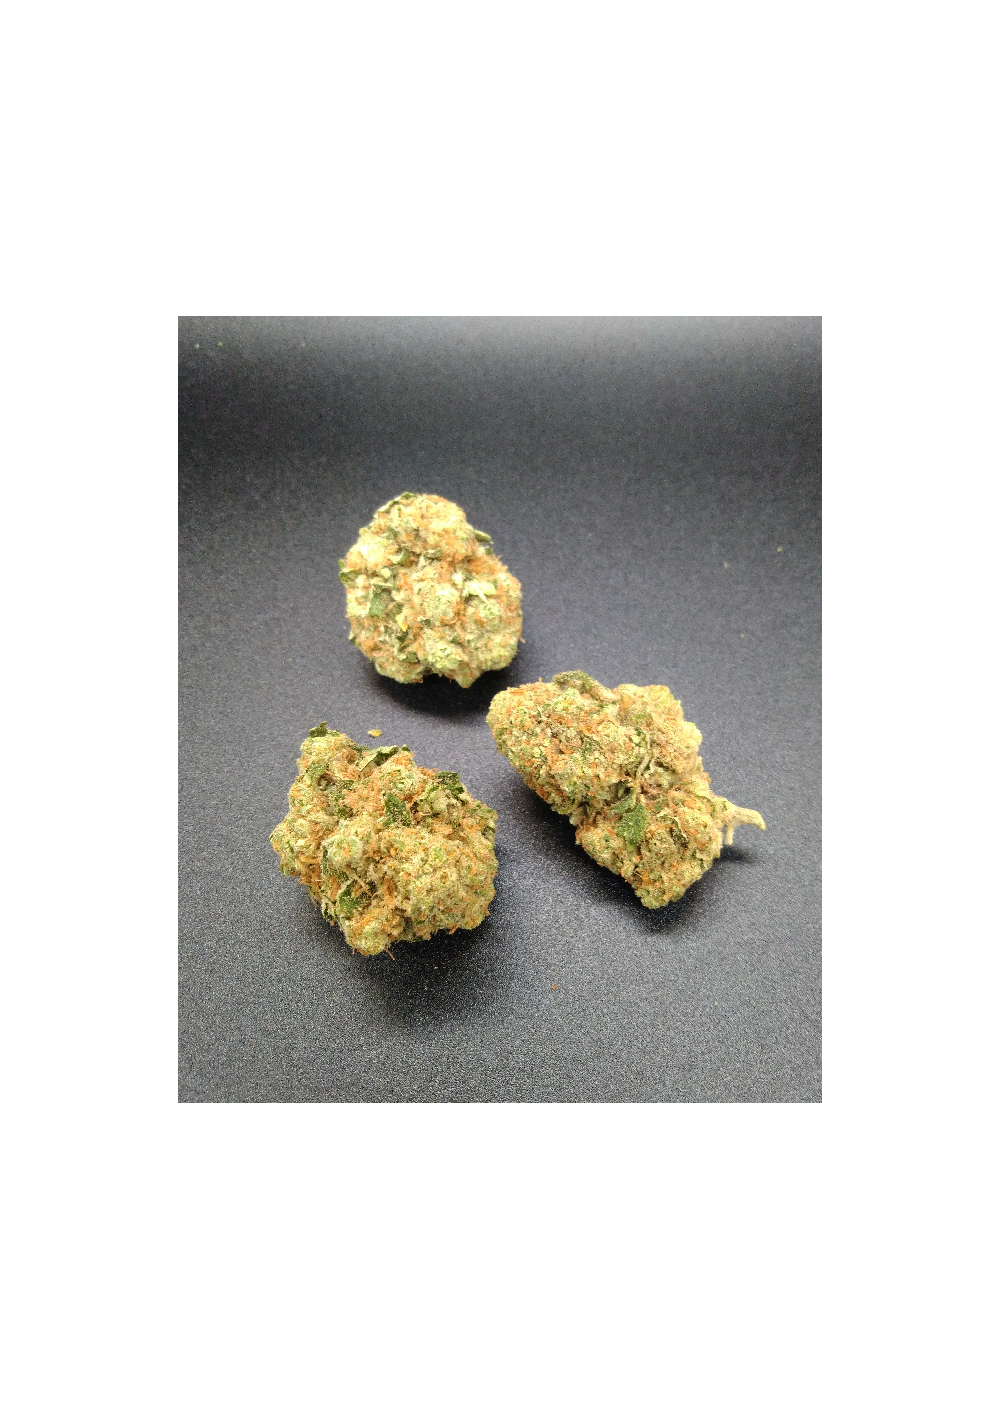 Tropical Dream CBD - Indoor Premium, Cannabis Light